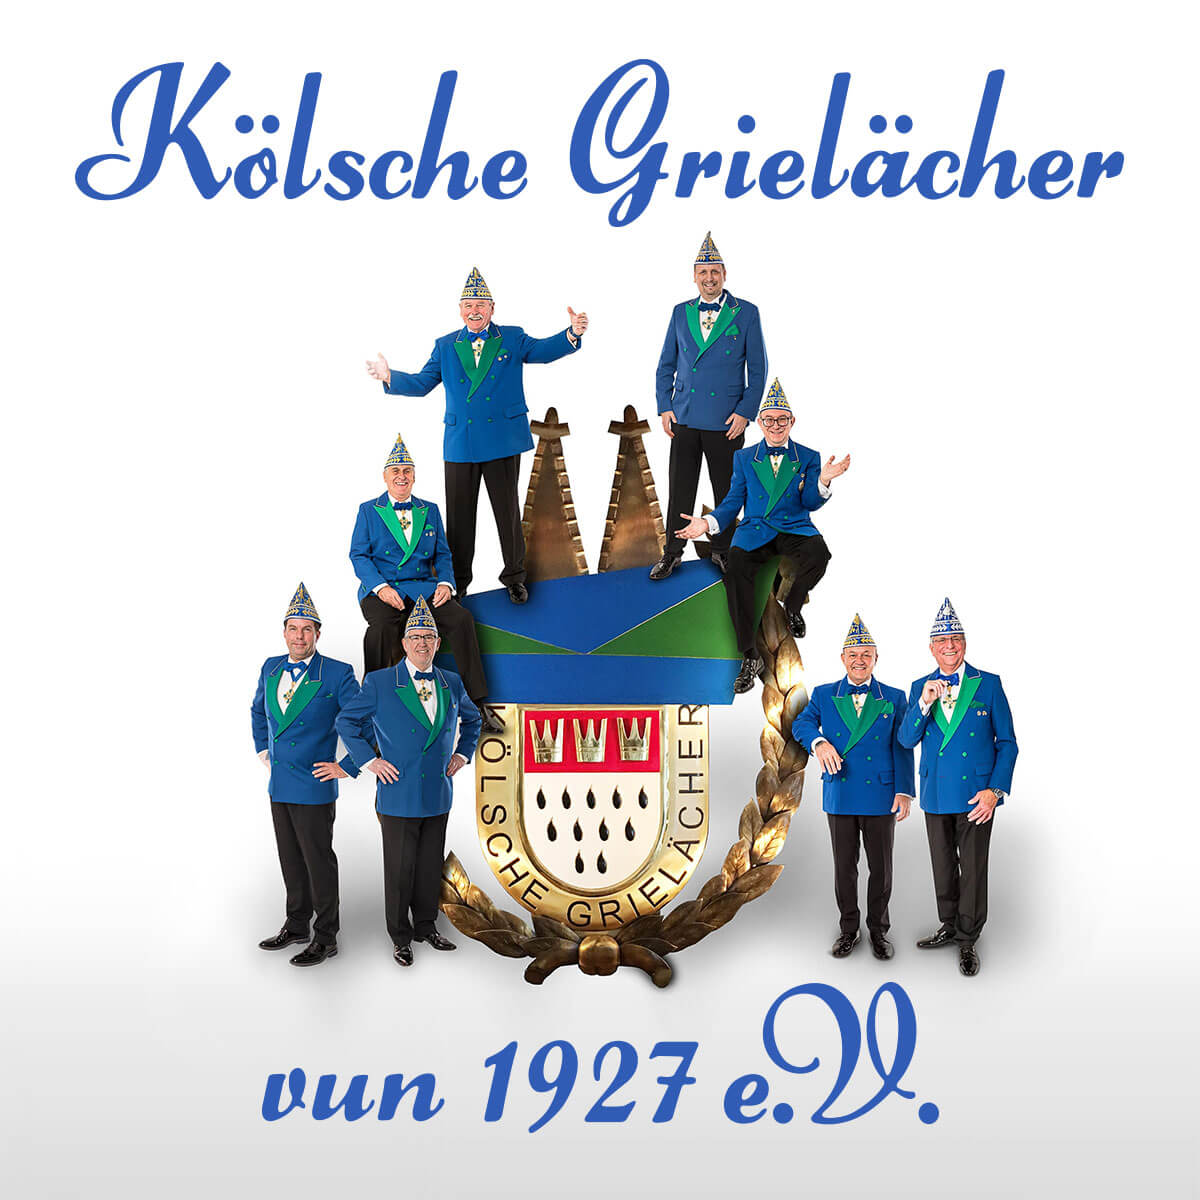 (c) Koelsche-grielaecher.de